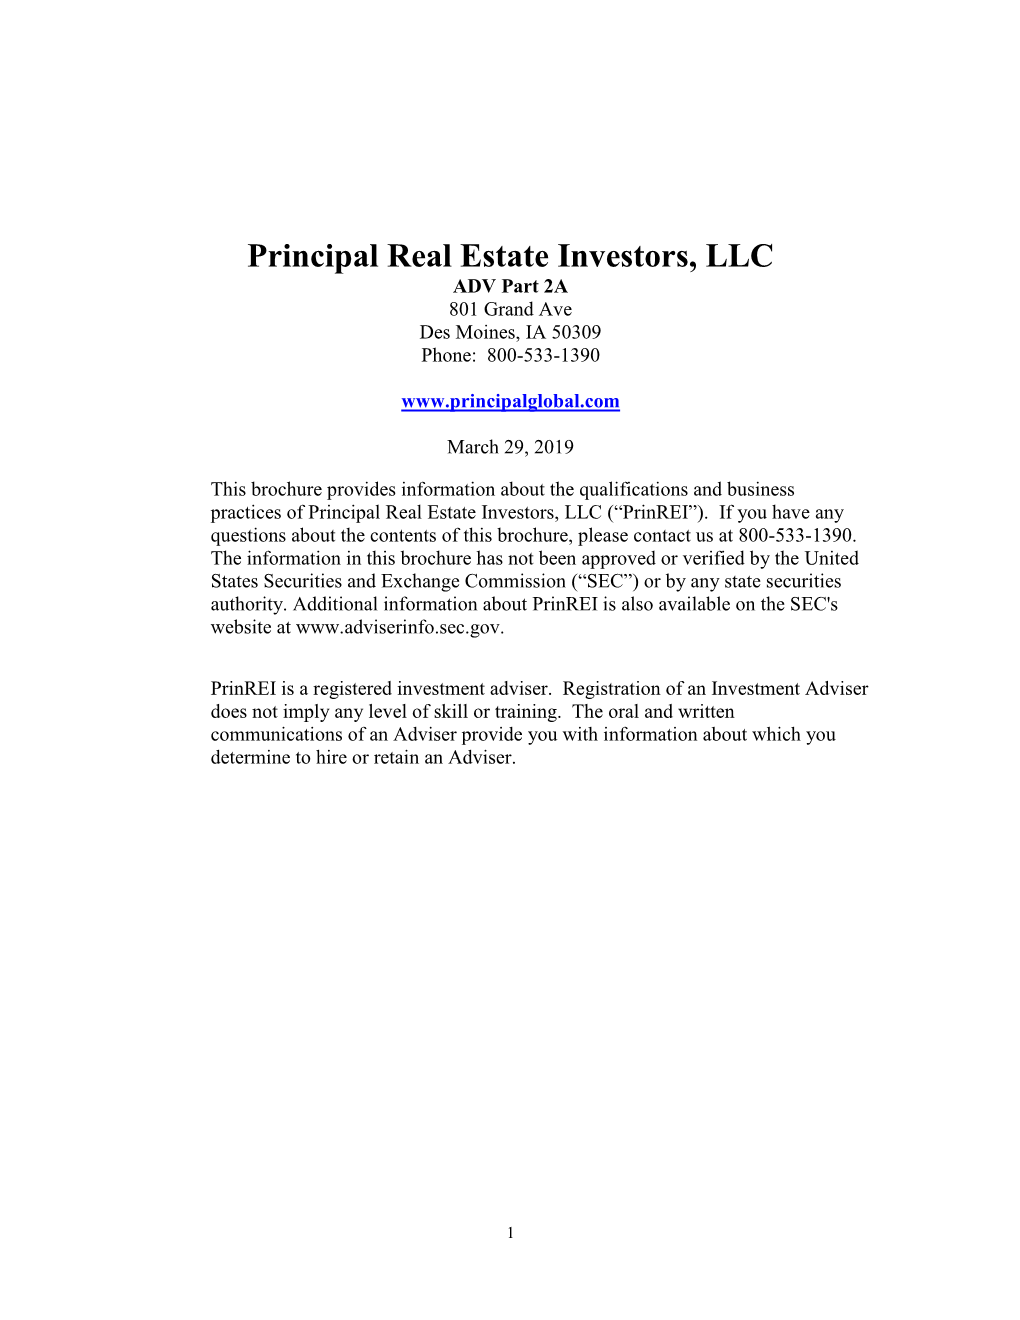 Principal Real Estate Investors, LLC ADV Part 2A 801 Grand Ave Des Moines, IA 50309 Phone: 800-533-1390